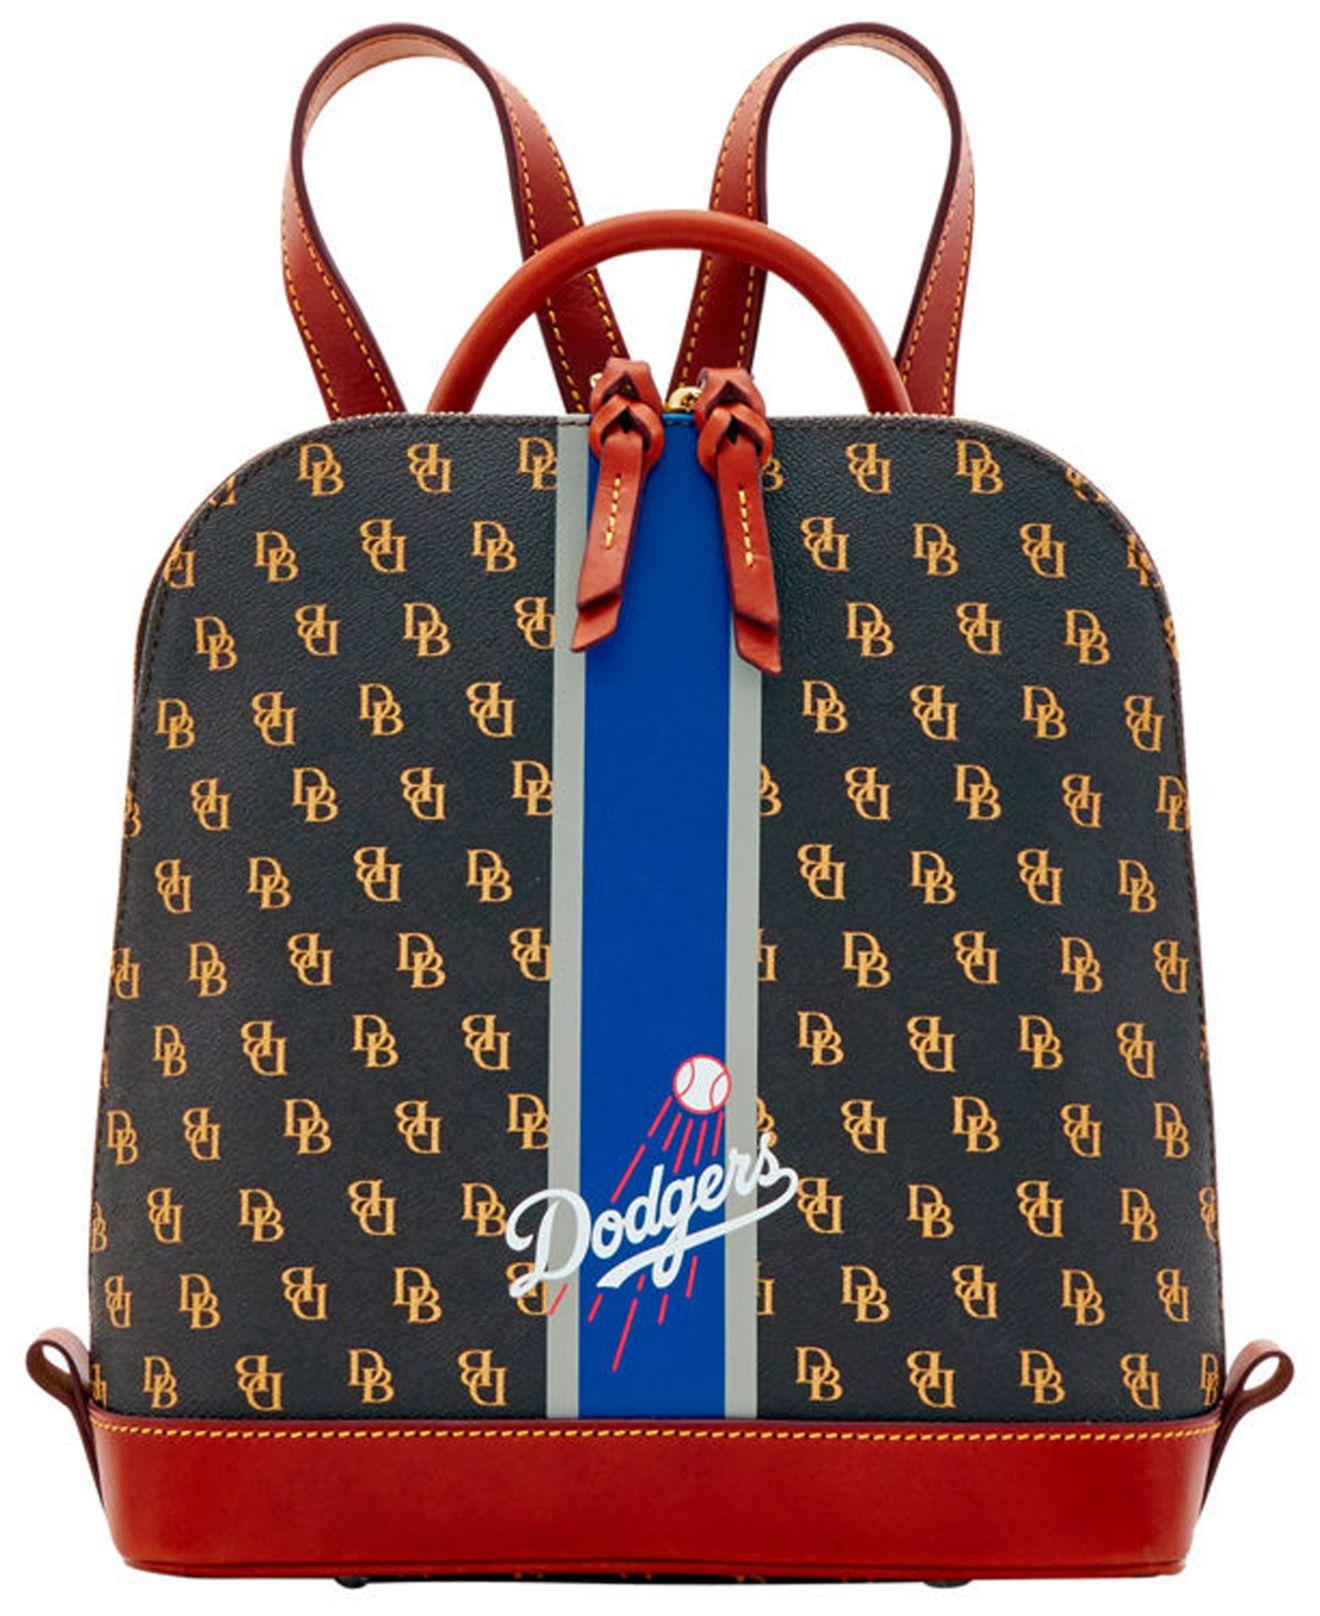 Dooney & Bourke Los Angeles Dodgers Zip Pod Stadium Signature Backpack